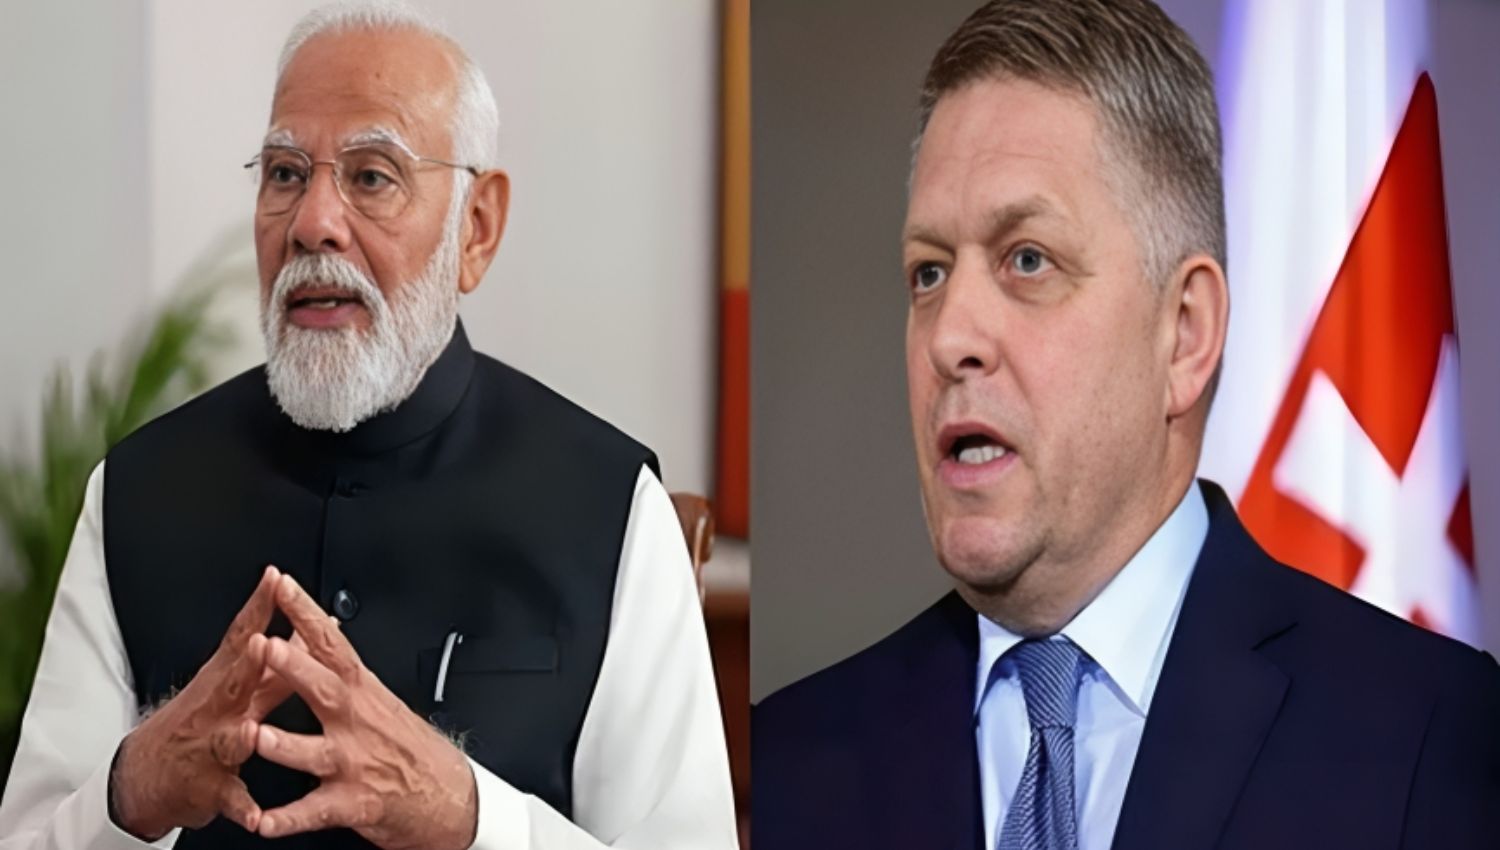 PM Modi Denounces Assault on Slovak Premier Robert Fico: Condemns ‘Cowardly Act’